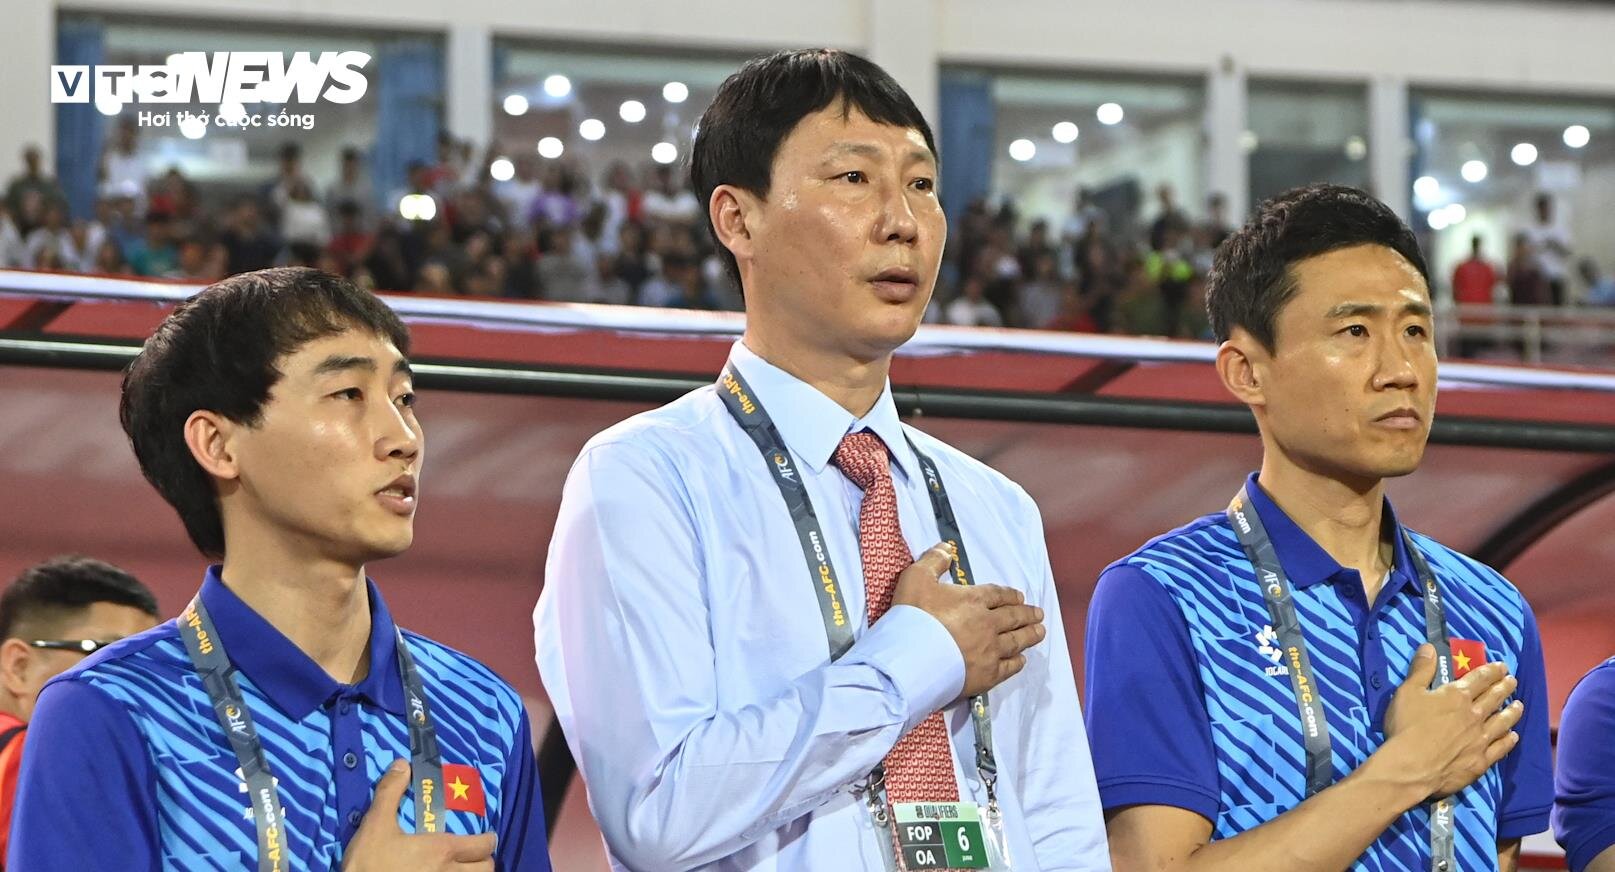 HLV Kim Sang-sik hát Quốc ca Việt Nam, đứng cả trận chỉ đạo cầu thủ - 1